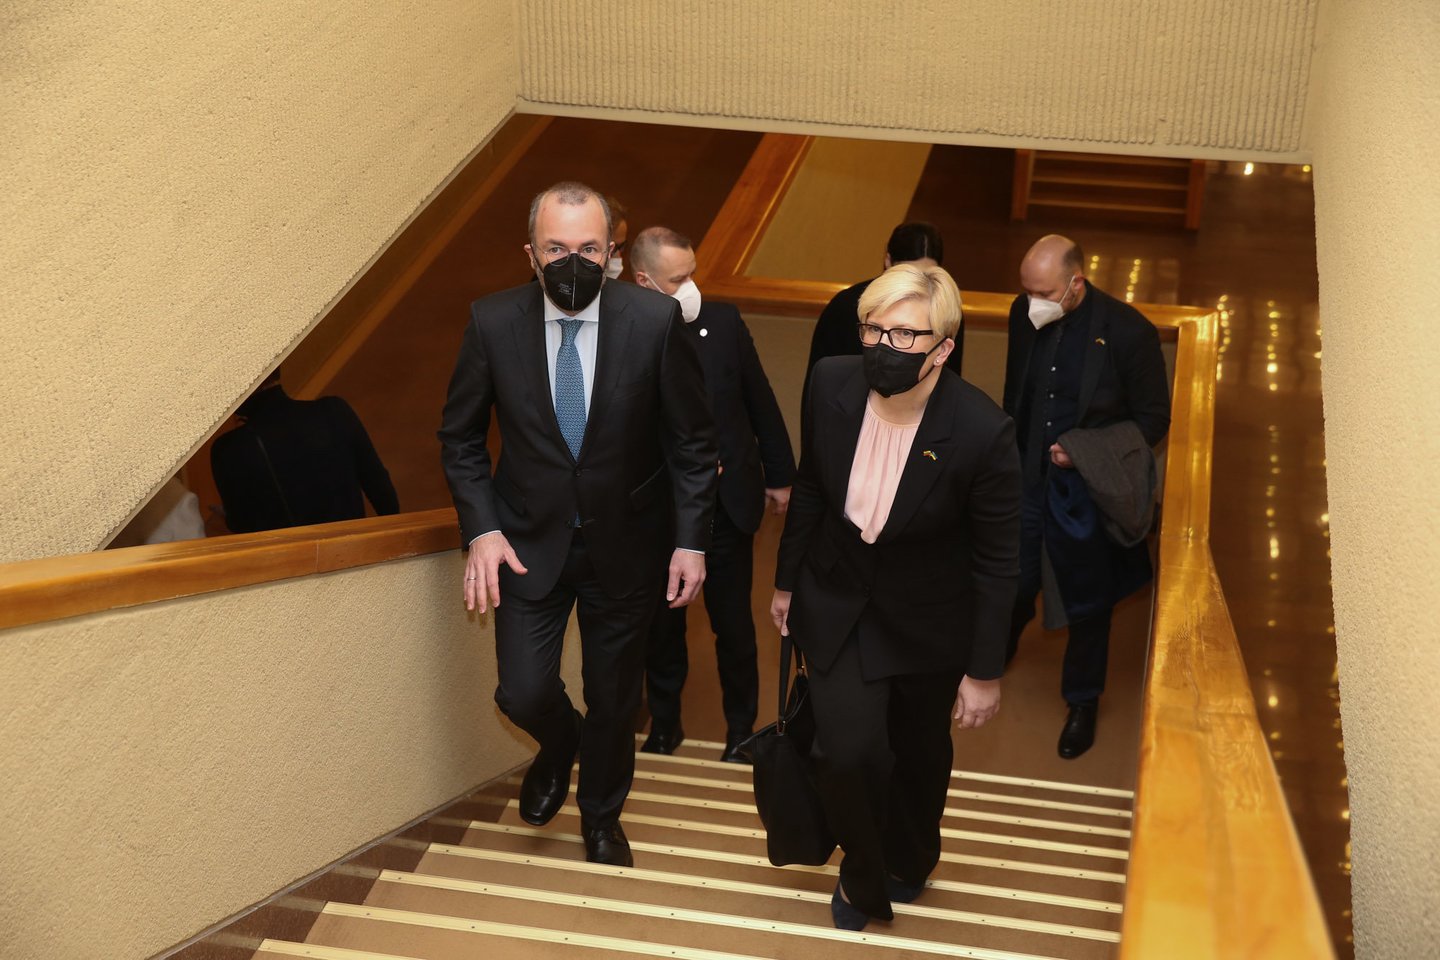 Europos liaudies partijos frakcijos vadovas Manfredas Weberis atvyko į Lietuvą solidarumo vizito.<br>R.Danisevičiaus nuotr.